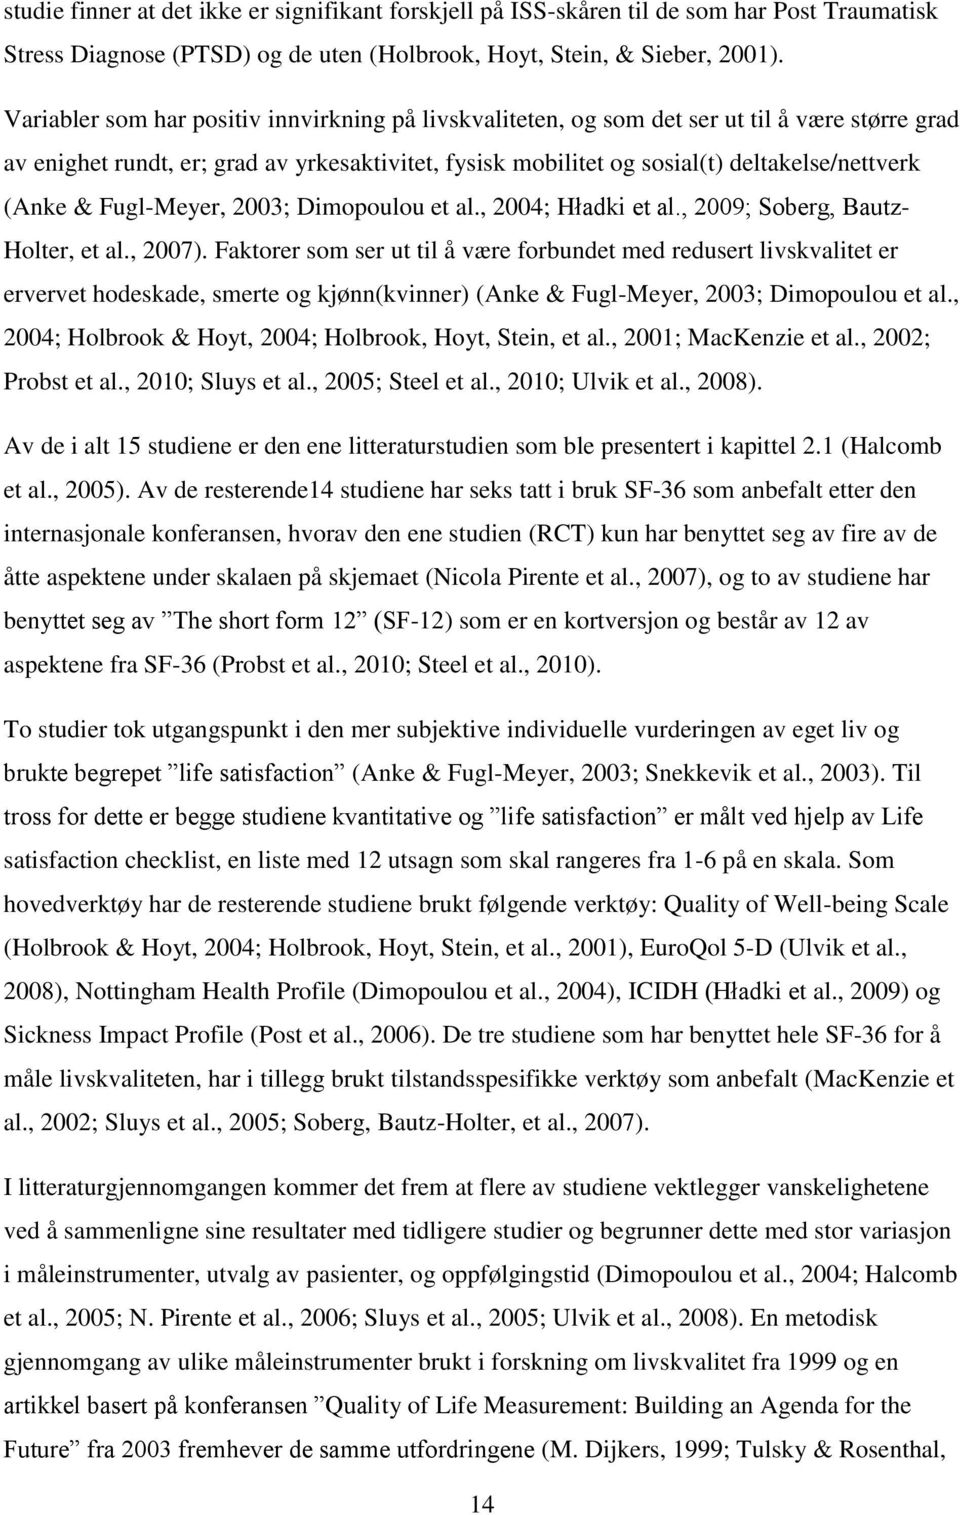 & Fugl-Meyer, 2003; Dimopoulou et al., 2004; Hładki et al., 2009; Soberg, Bautz- Holter, et al., 2007).